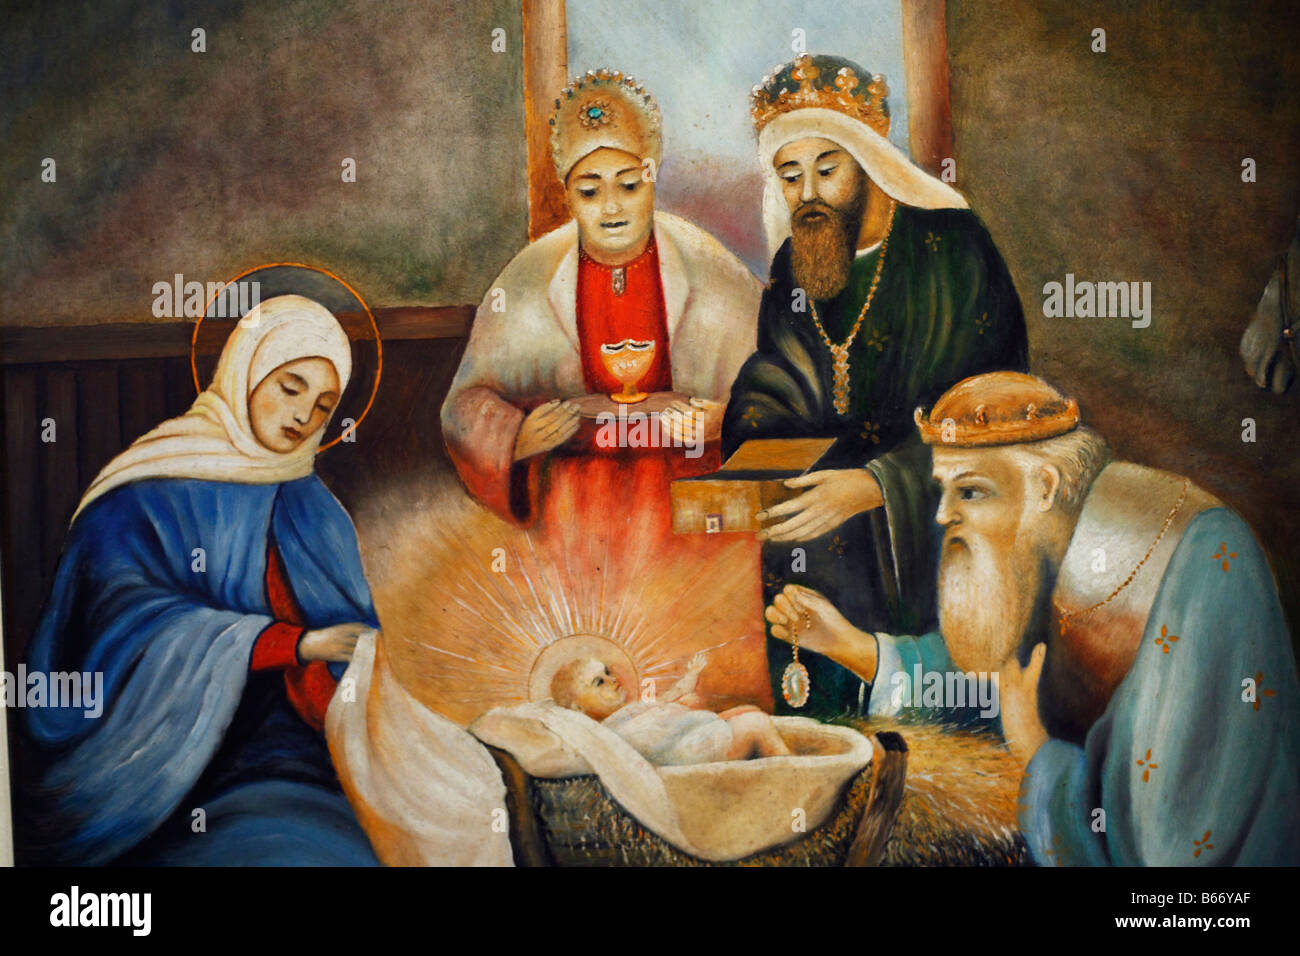 Icône de la nativité de Jésus, la vieille église de Saint Elie (1560), Toporovtsi, Chernivtsi oblast (province), Ukraine Banque D'Images